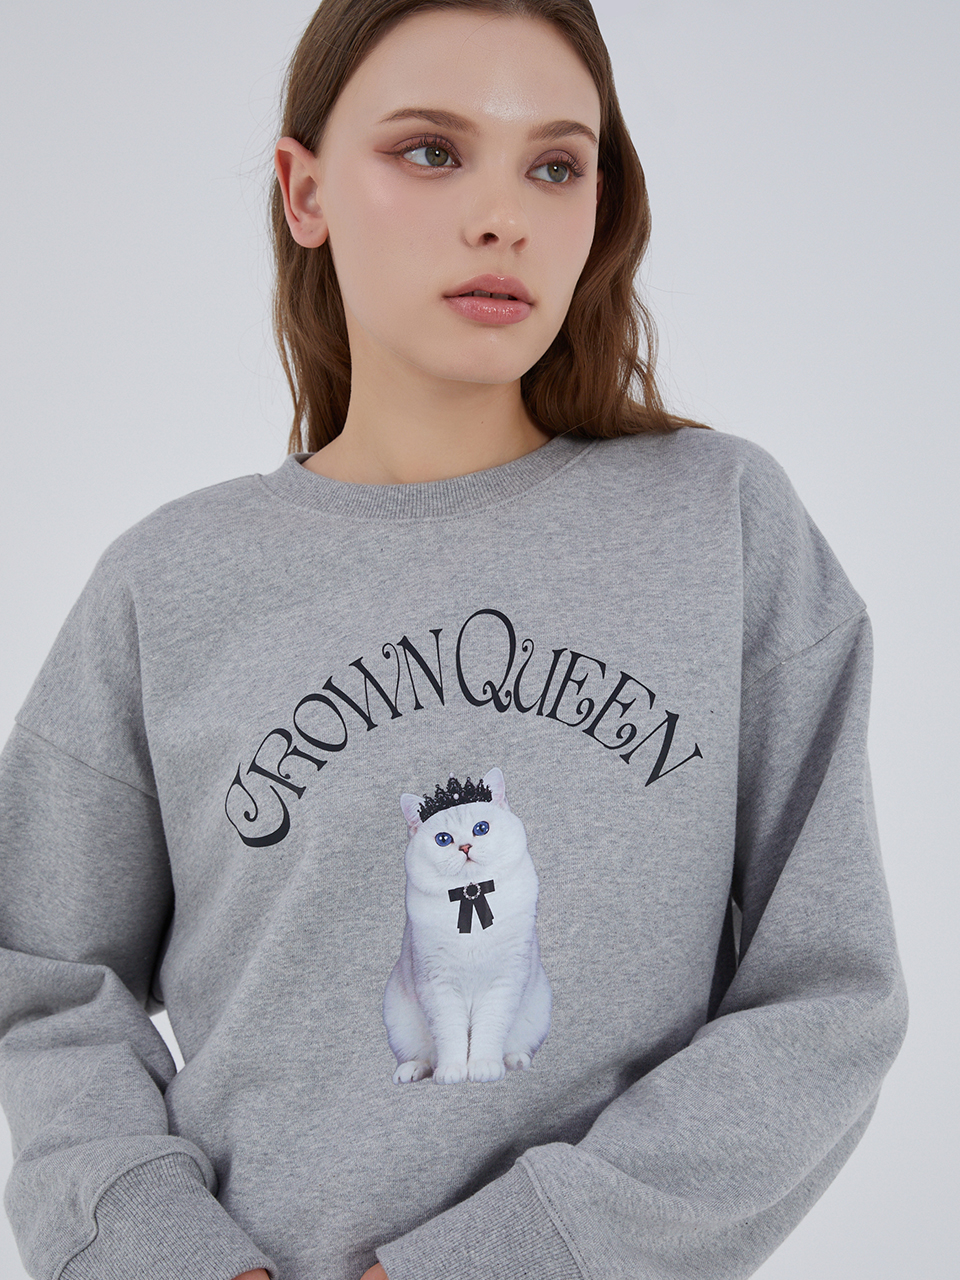 Crown Queen Sweatshirt_MG